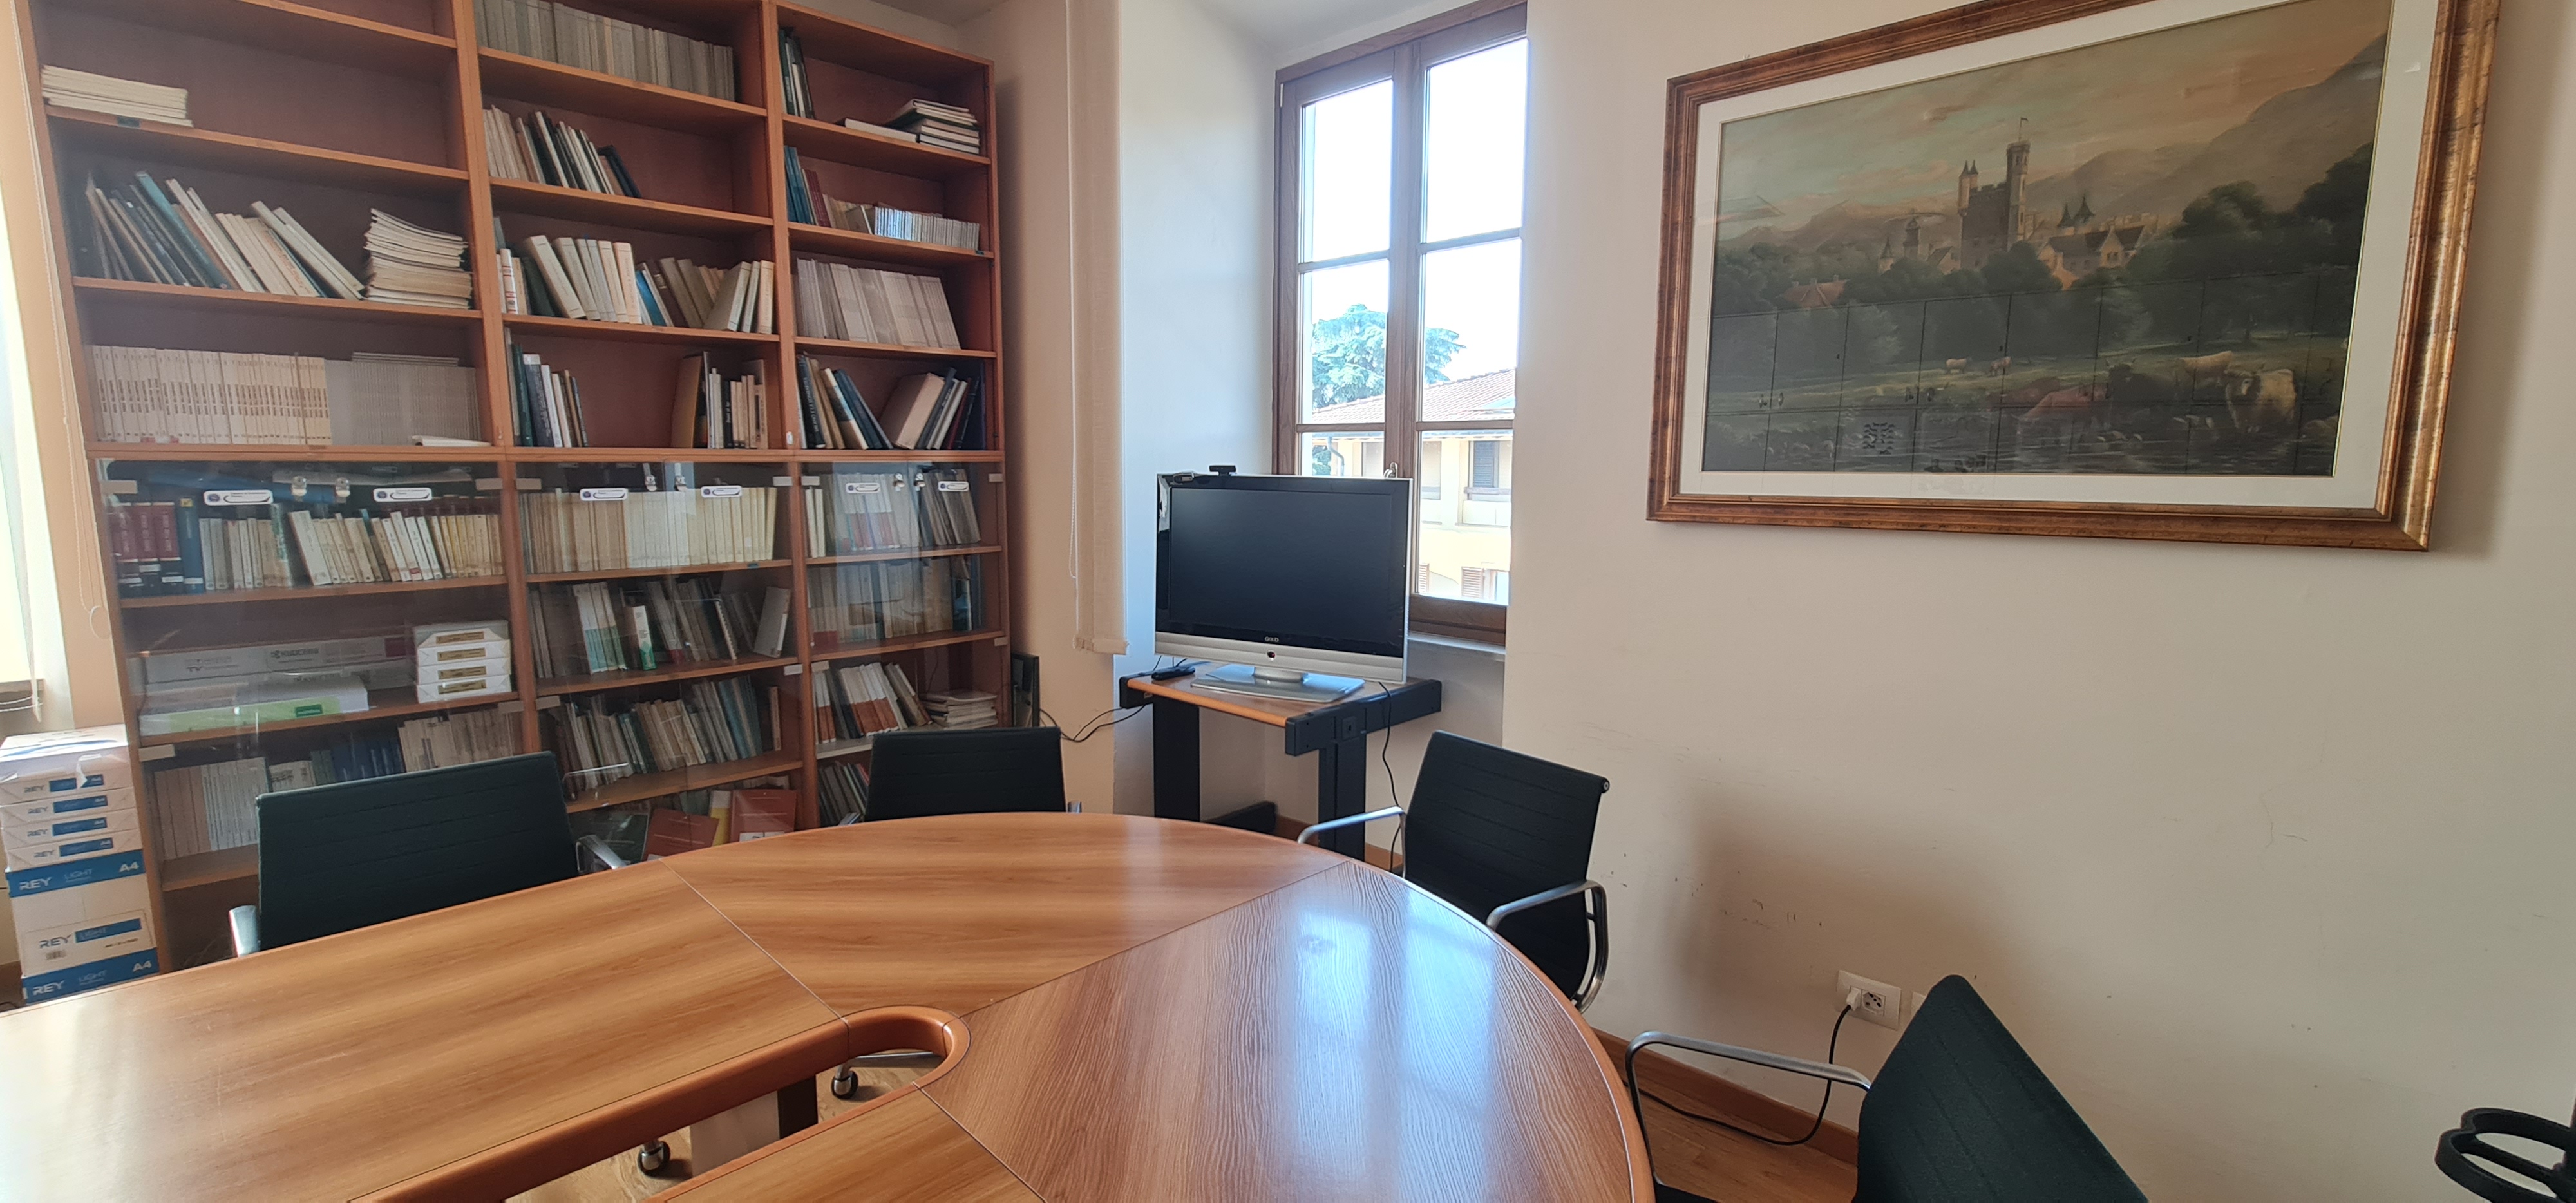 Sala Biblioteca Pistoia - monitor proiezione